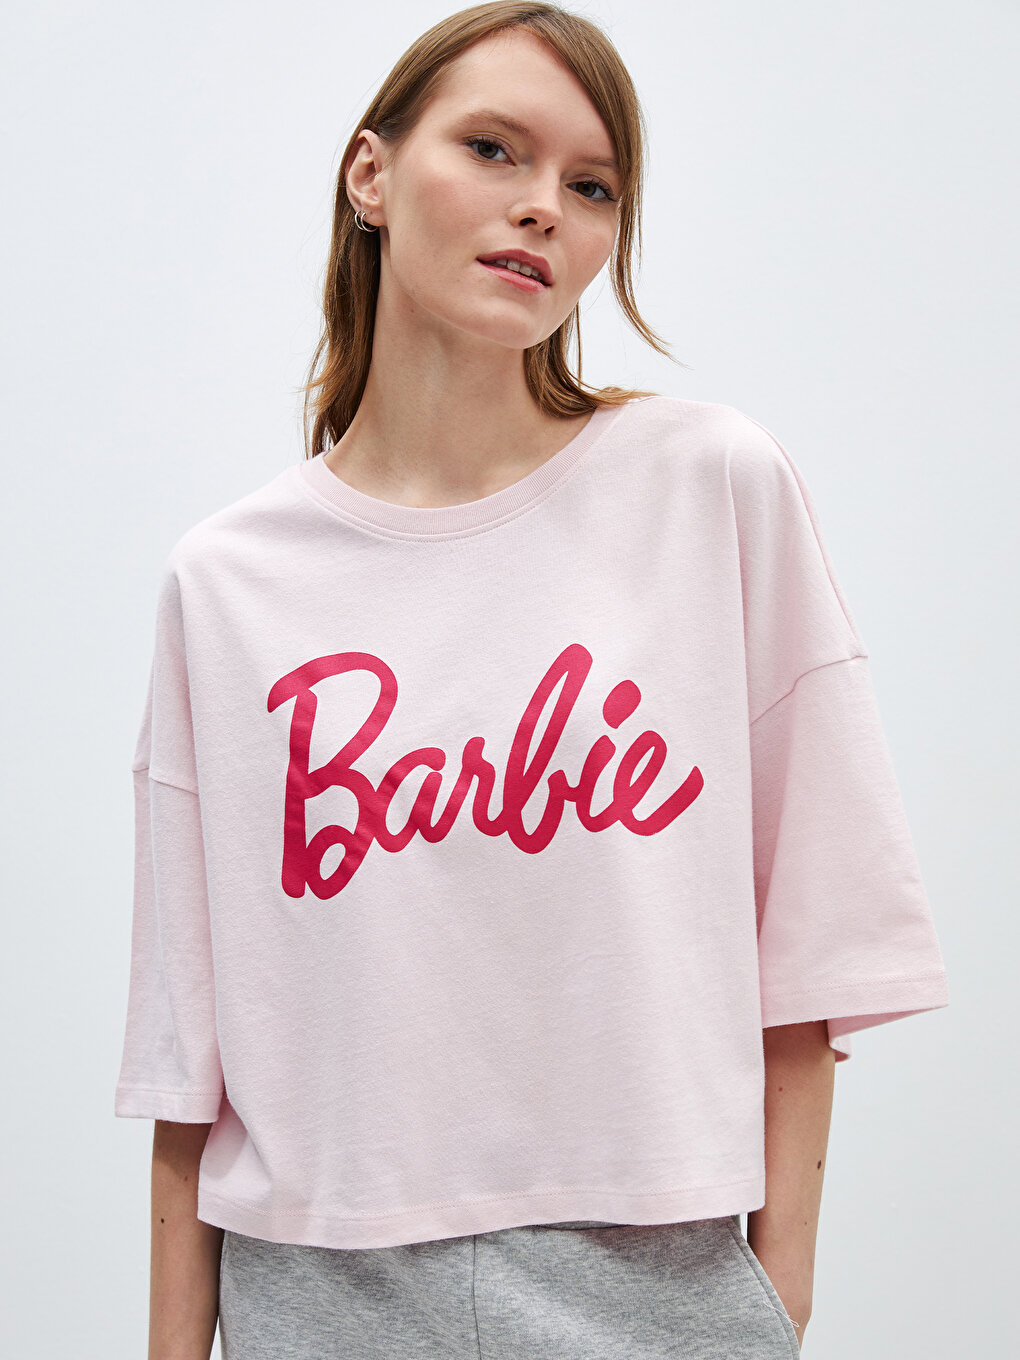 Barbie print short sleeve T-shirt - Women